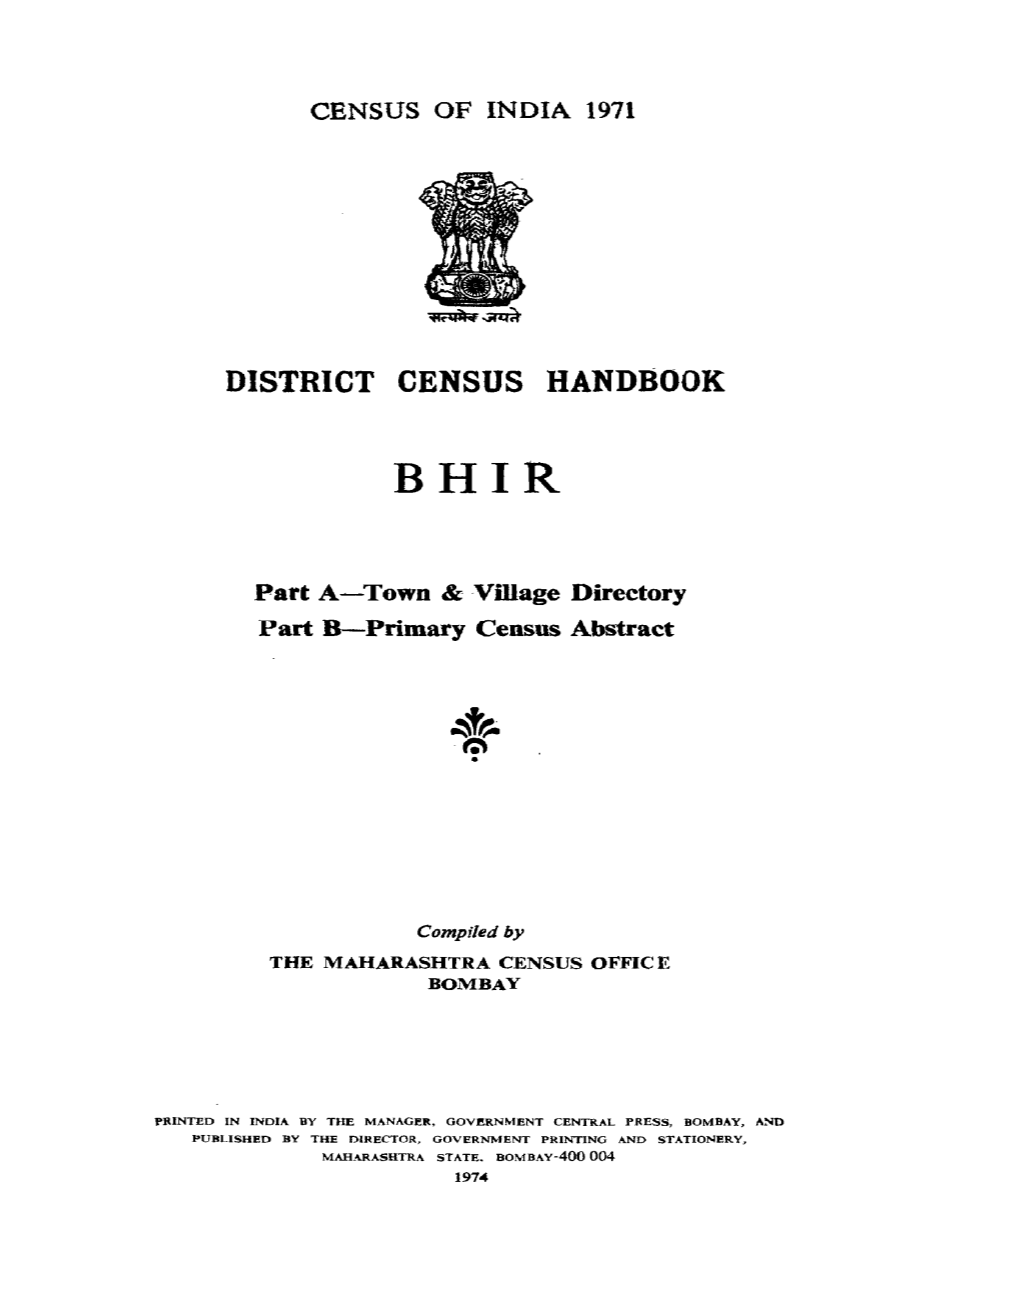 District Census Handbook, Bhir, Part